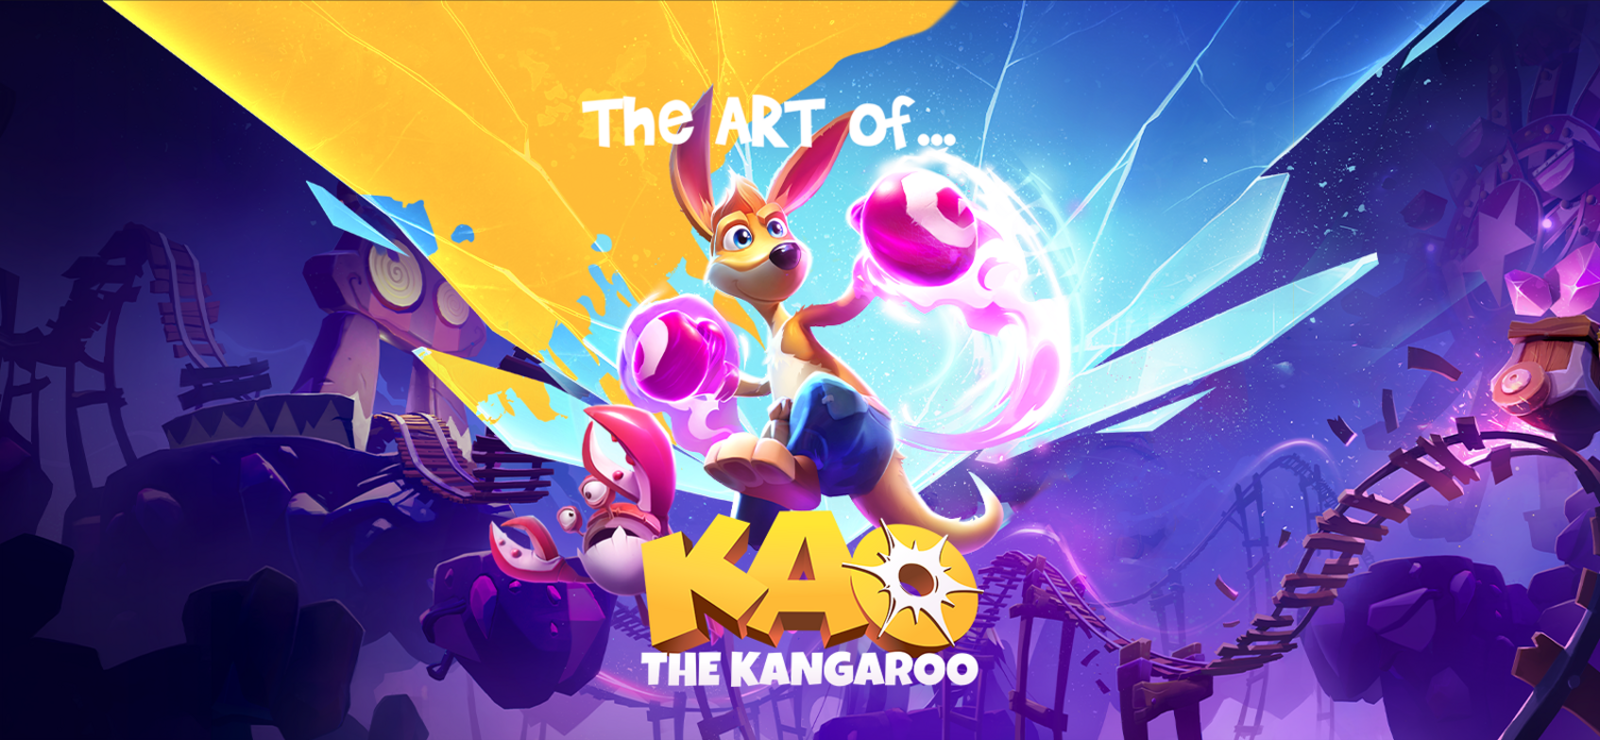 Kao The Kangaroo - Artbook